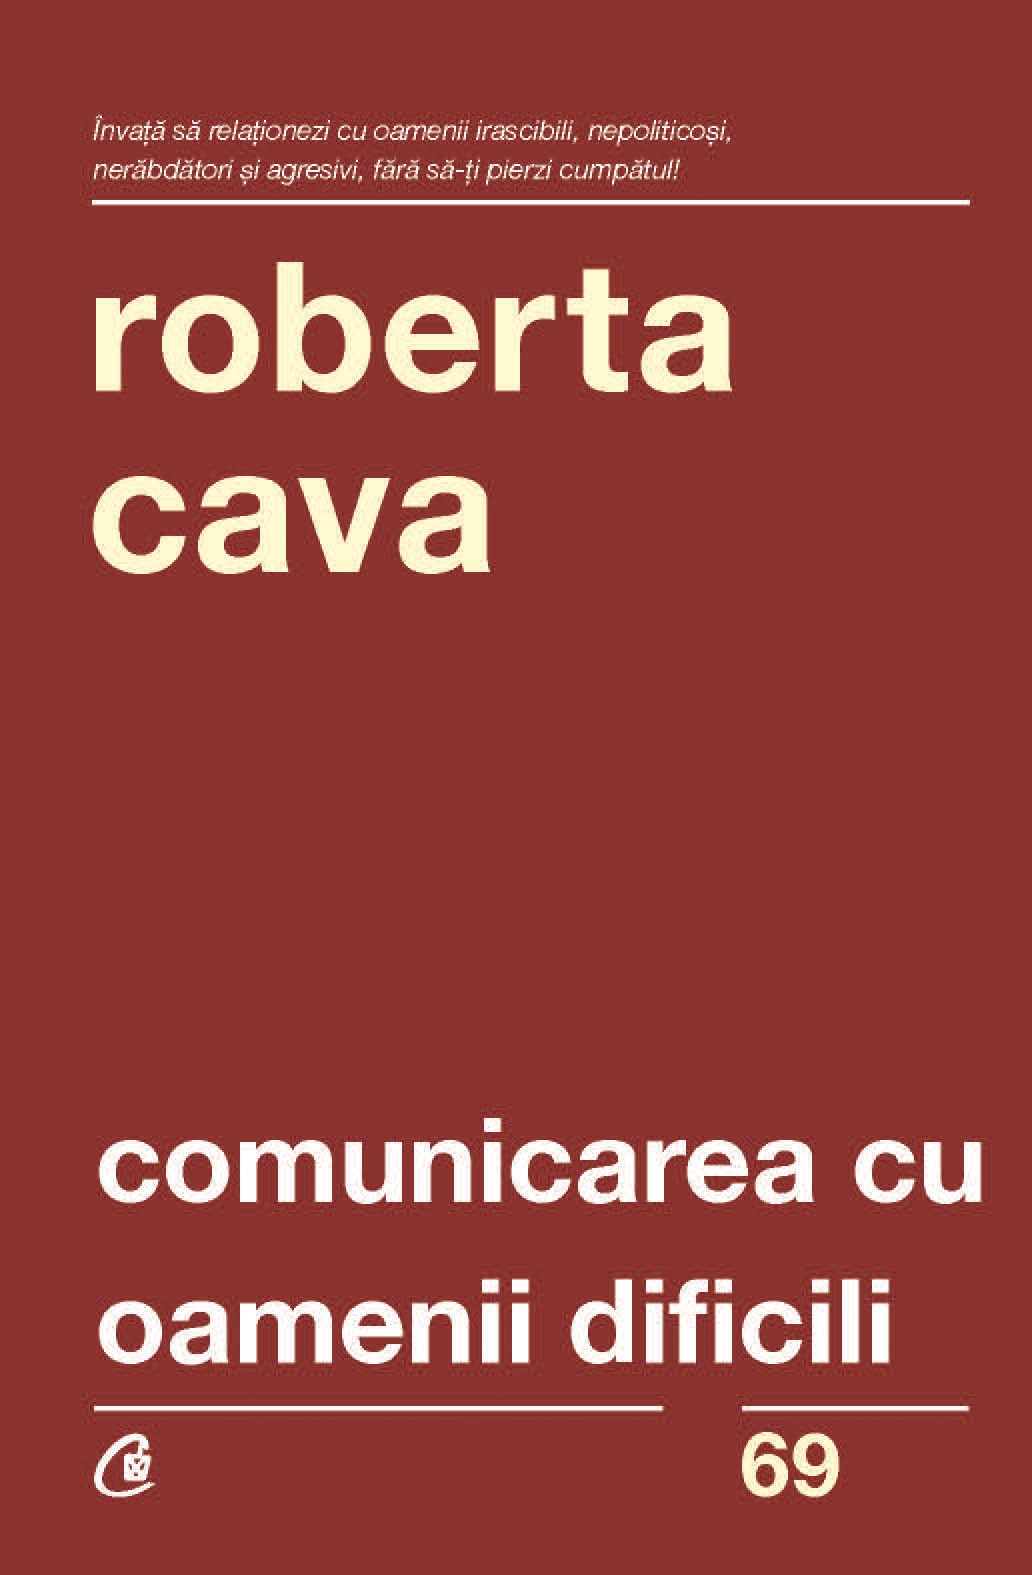 Comunicarea cu oamenii dificili | Roberta Cava De La Carturesti Carti Dezvoltare Personala 2023-09-27